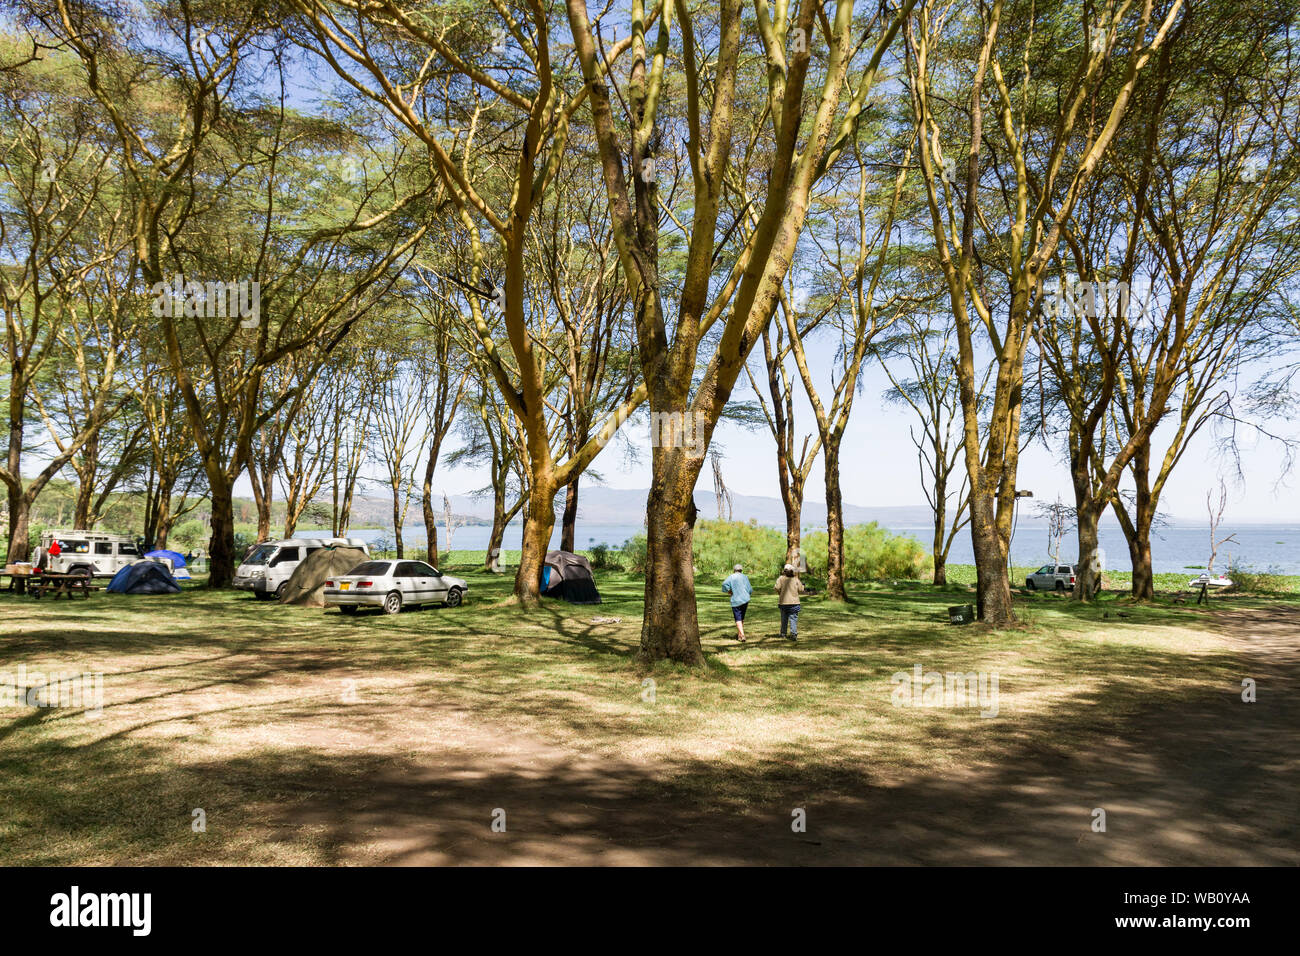 Camp Carnelley's camp site sotto grandi alberi dal lago Naivasha con turisti e tende, Kenya Foto Stock